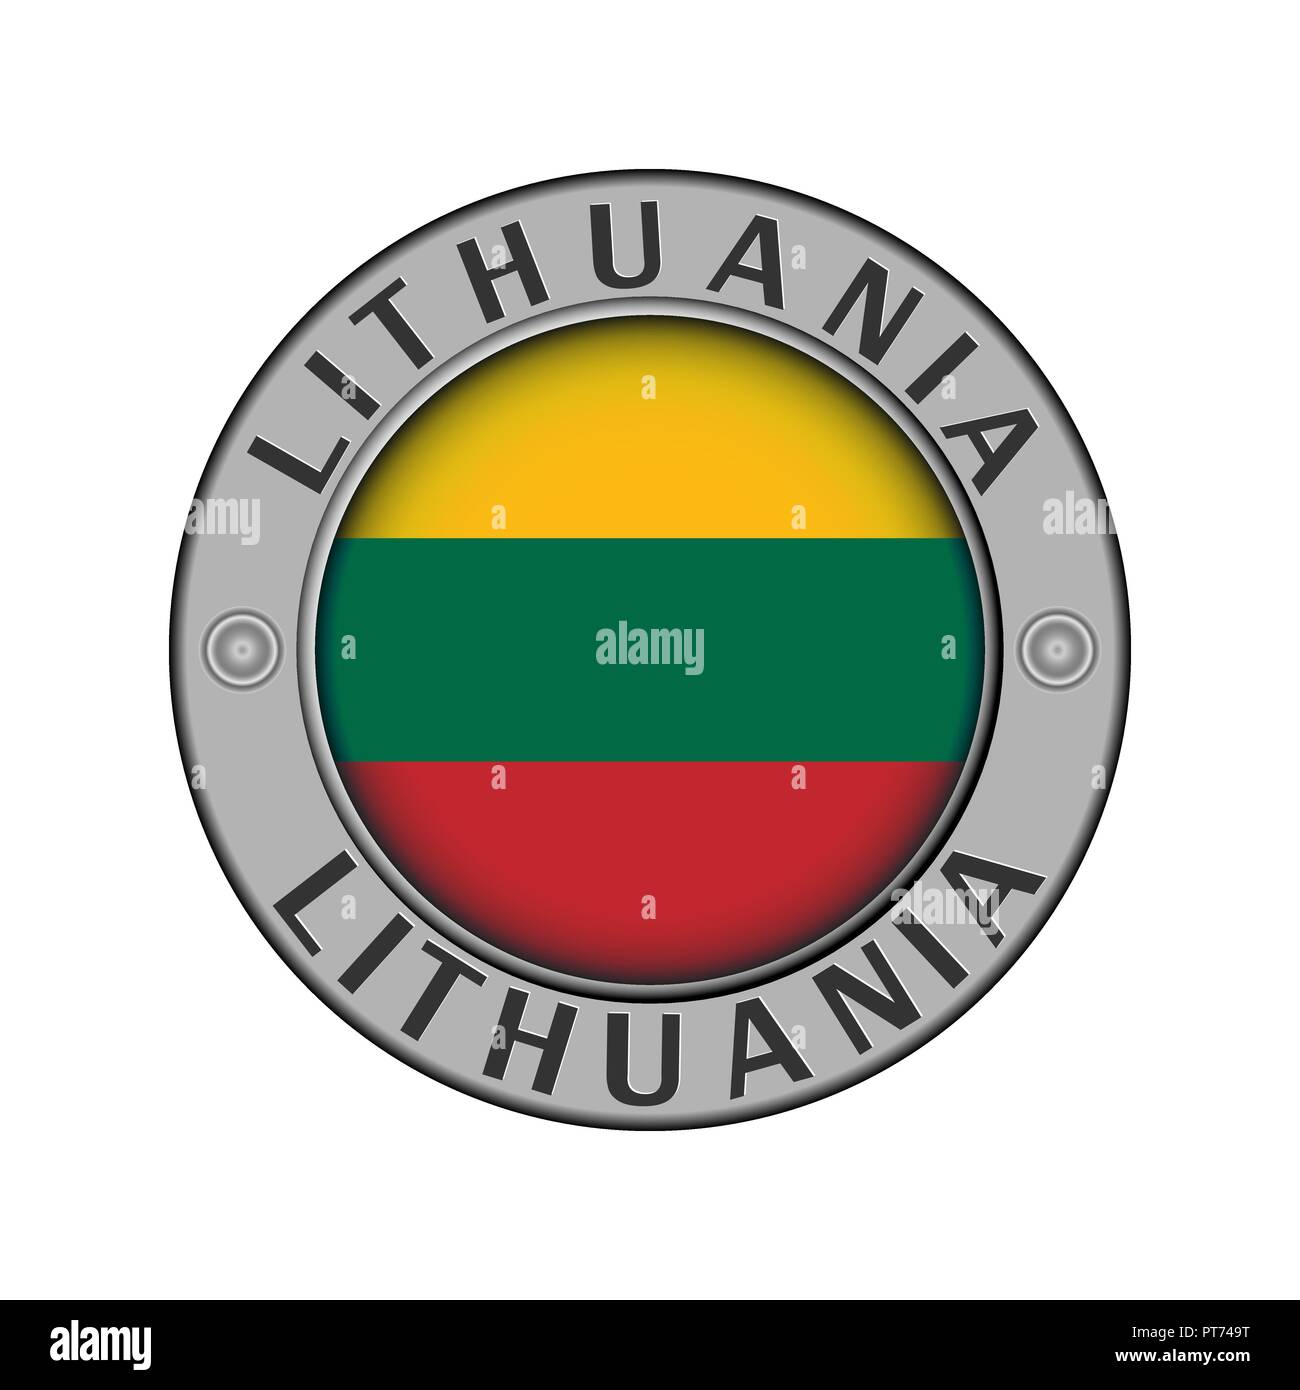 Rotondo di metallo medaglione con il nome del paese di Lituania e un indicatore rotondo nel centro Illustrazione Vettoriale